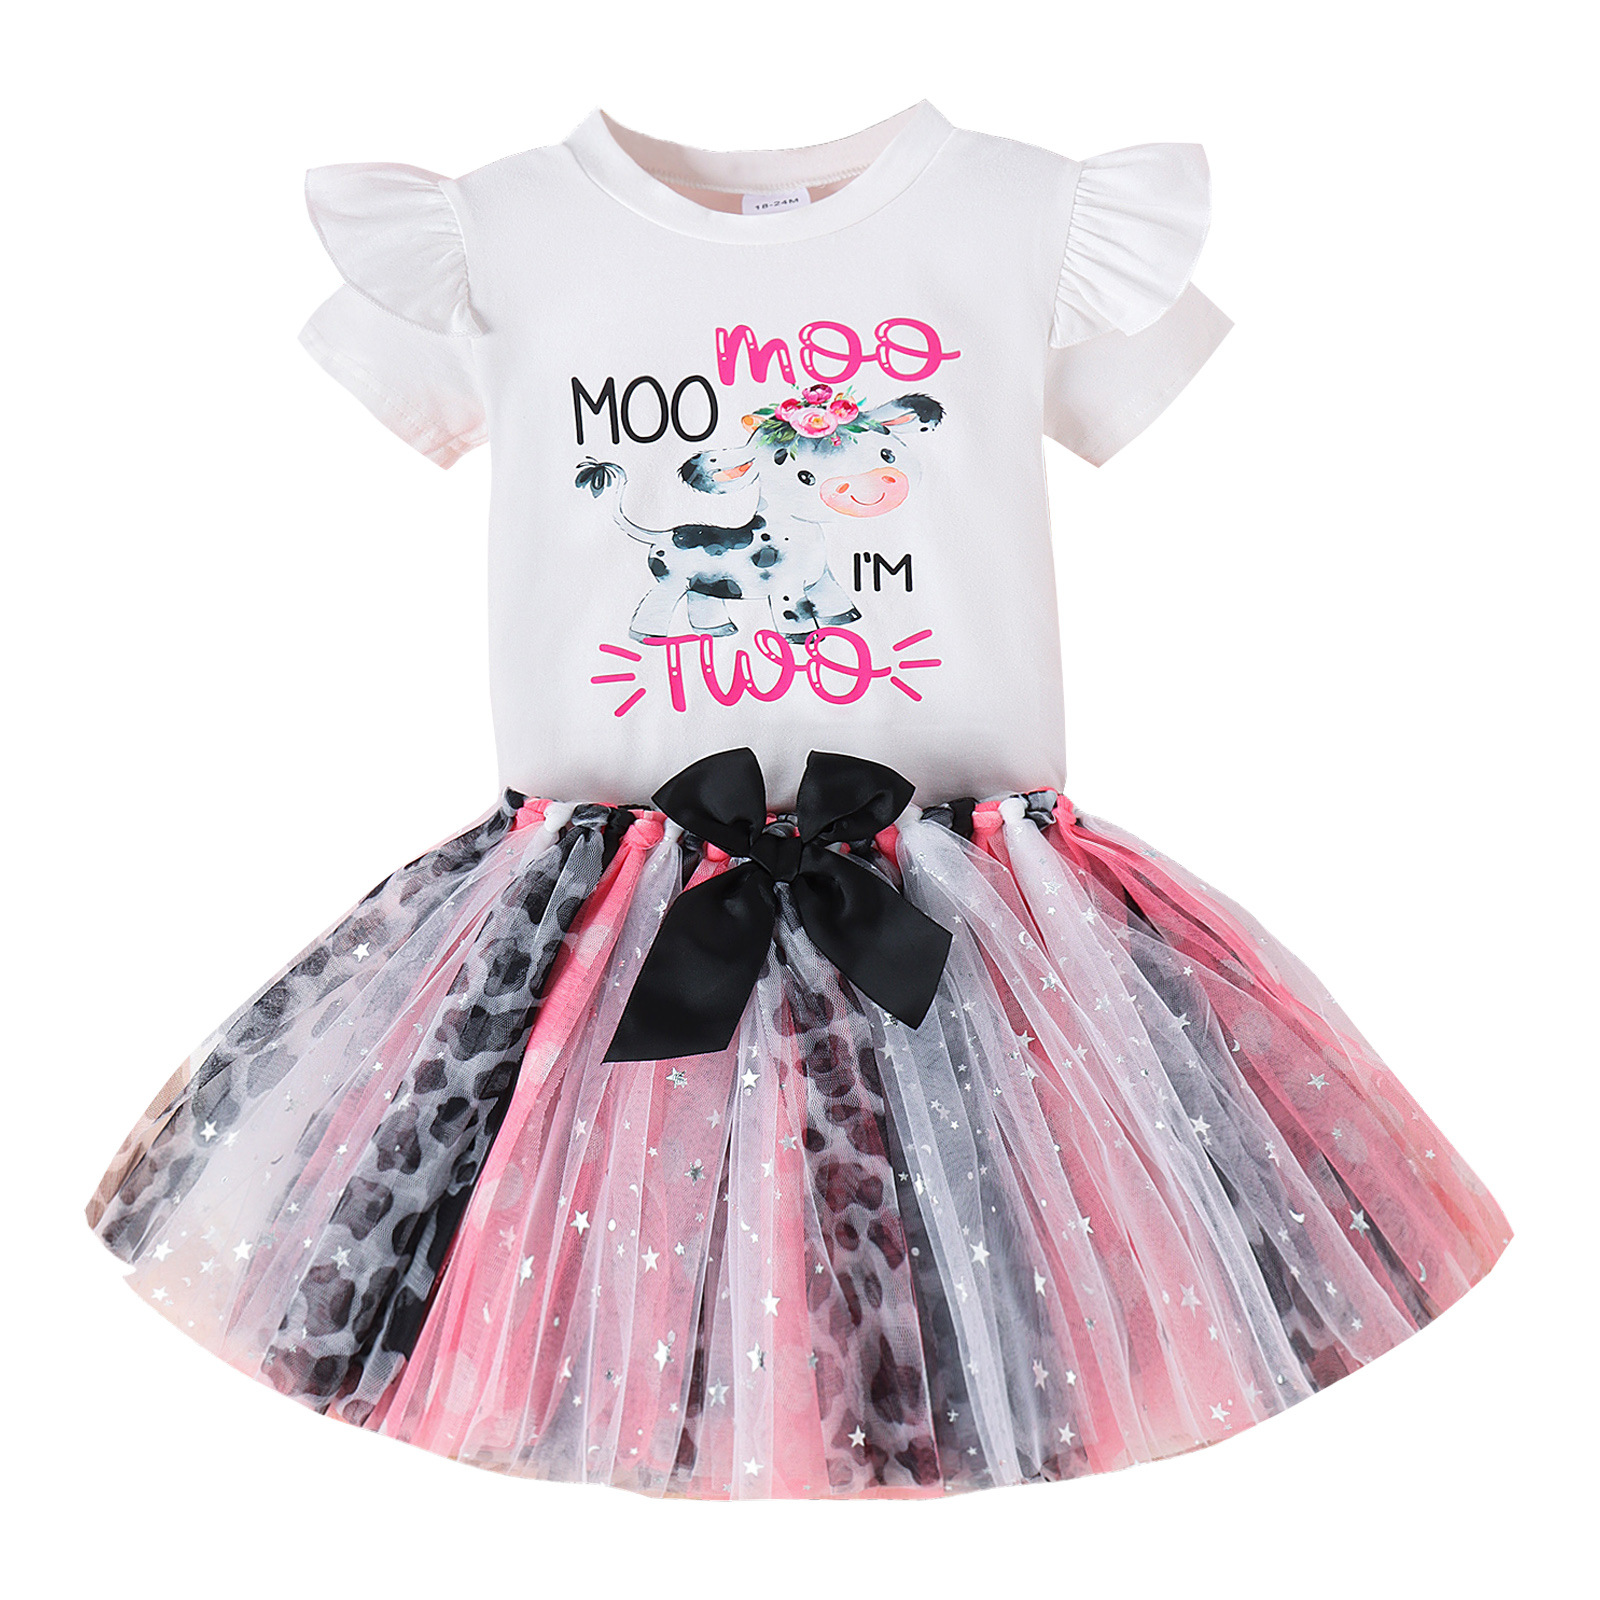 Infantas crianças roupas princesas conjuntos de garotas cartoon letra imprimida falbala fly shirt arcos de camiseta splicing splicing lace tule skirt roupas de bebê z7930